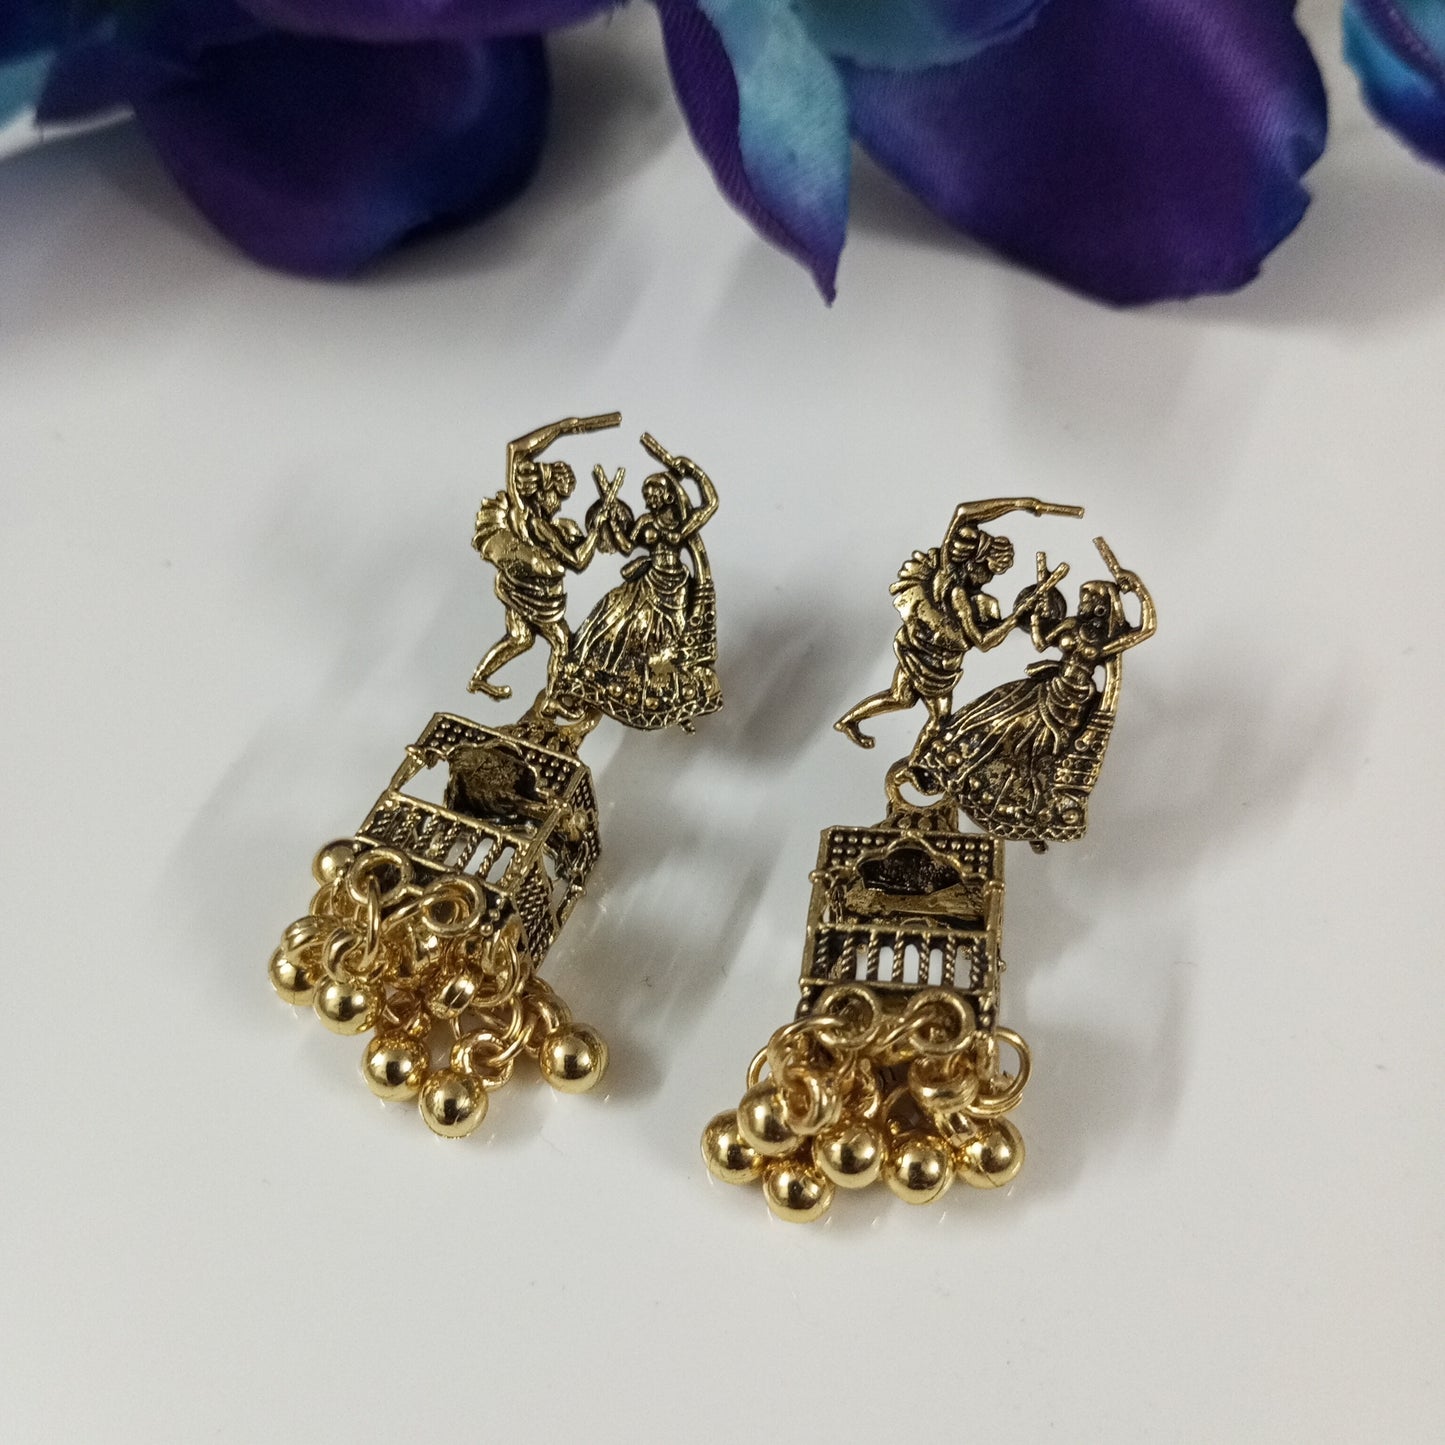 Oxidised Copper Look Couple Jhumka Earrings